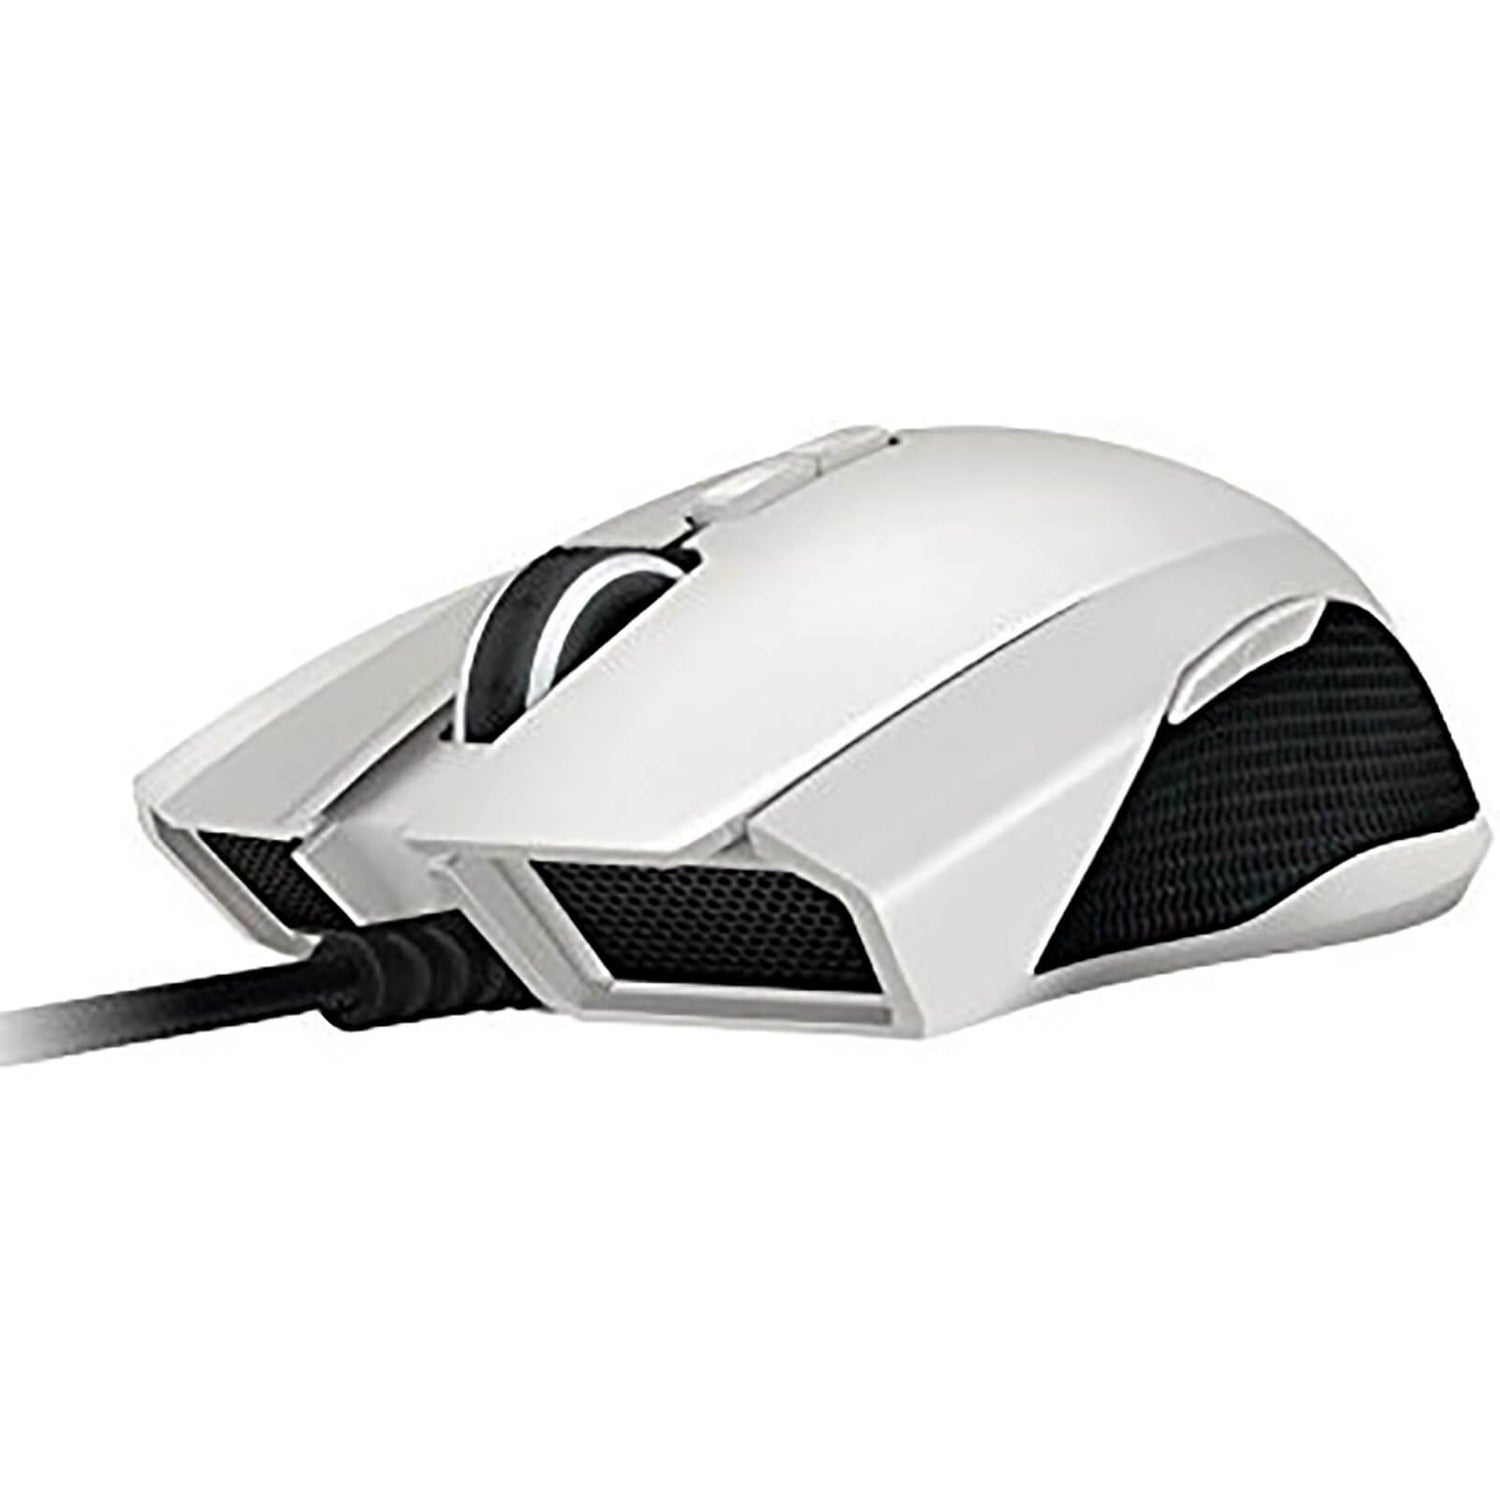 Razer Taipan Expert Ambidextrous Gaming Mouse - White (2 Year Warranty)